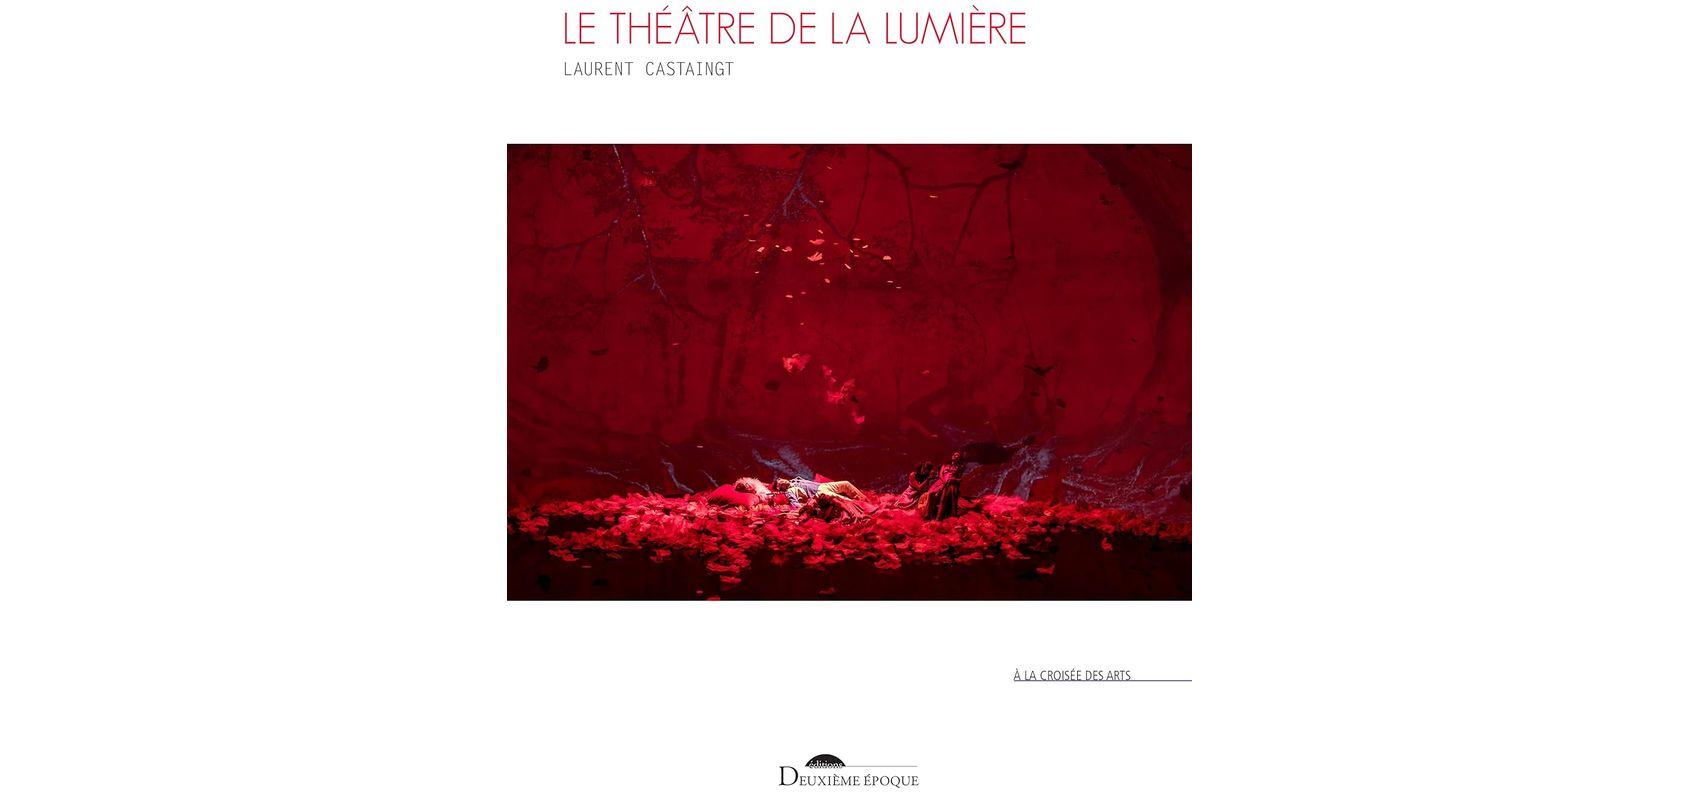 Le théâtre de la lumière – Couverture -  - D.R.